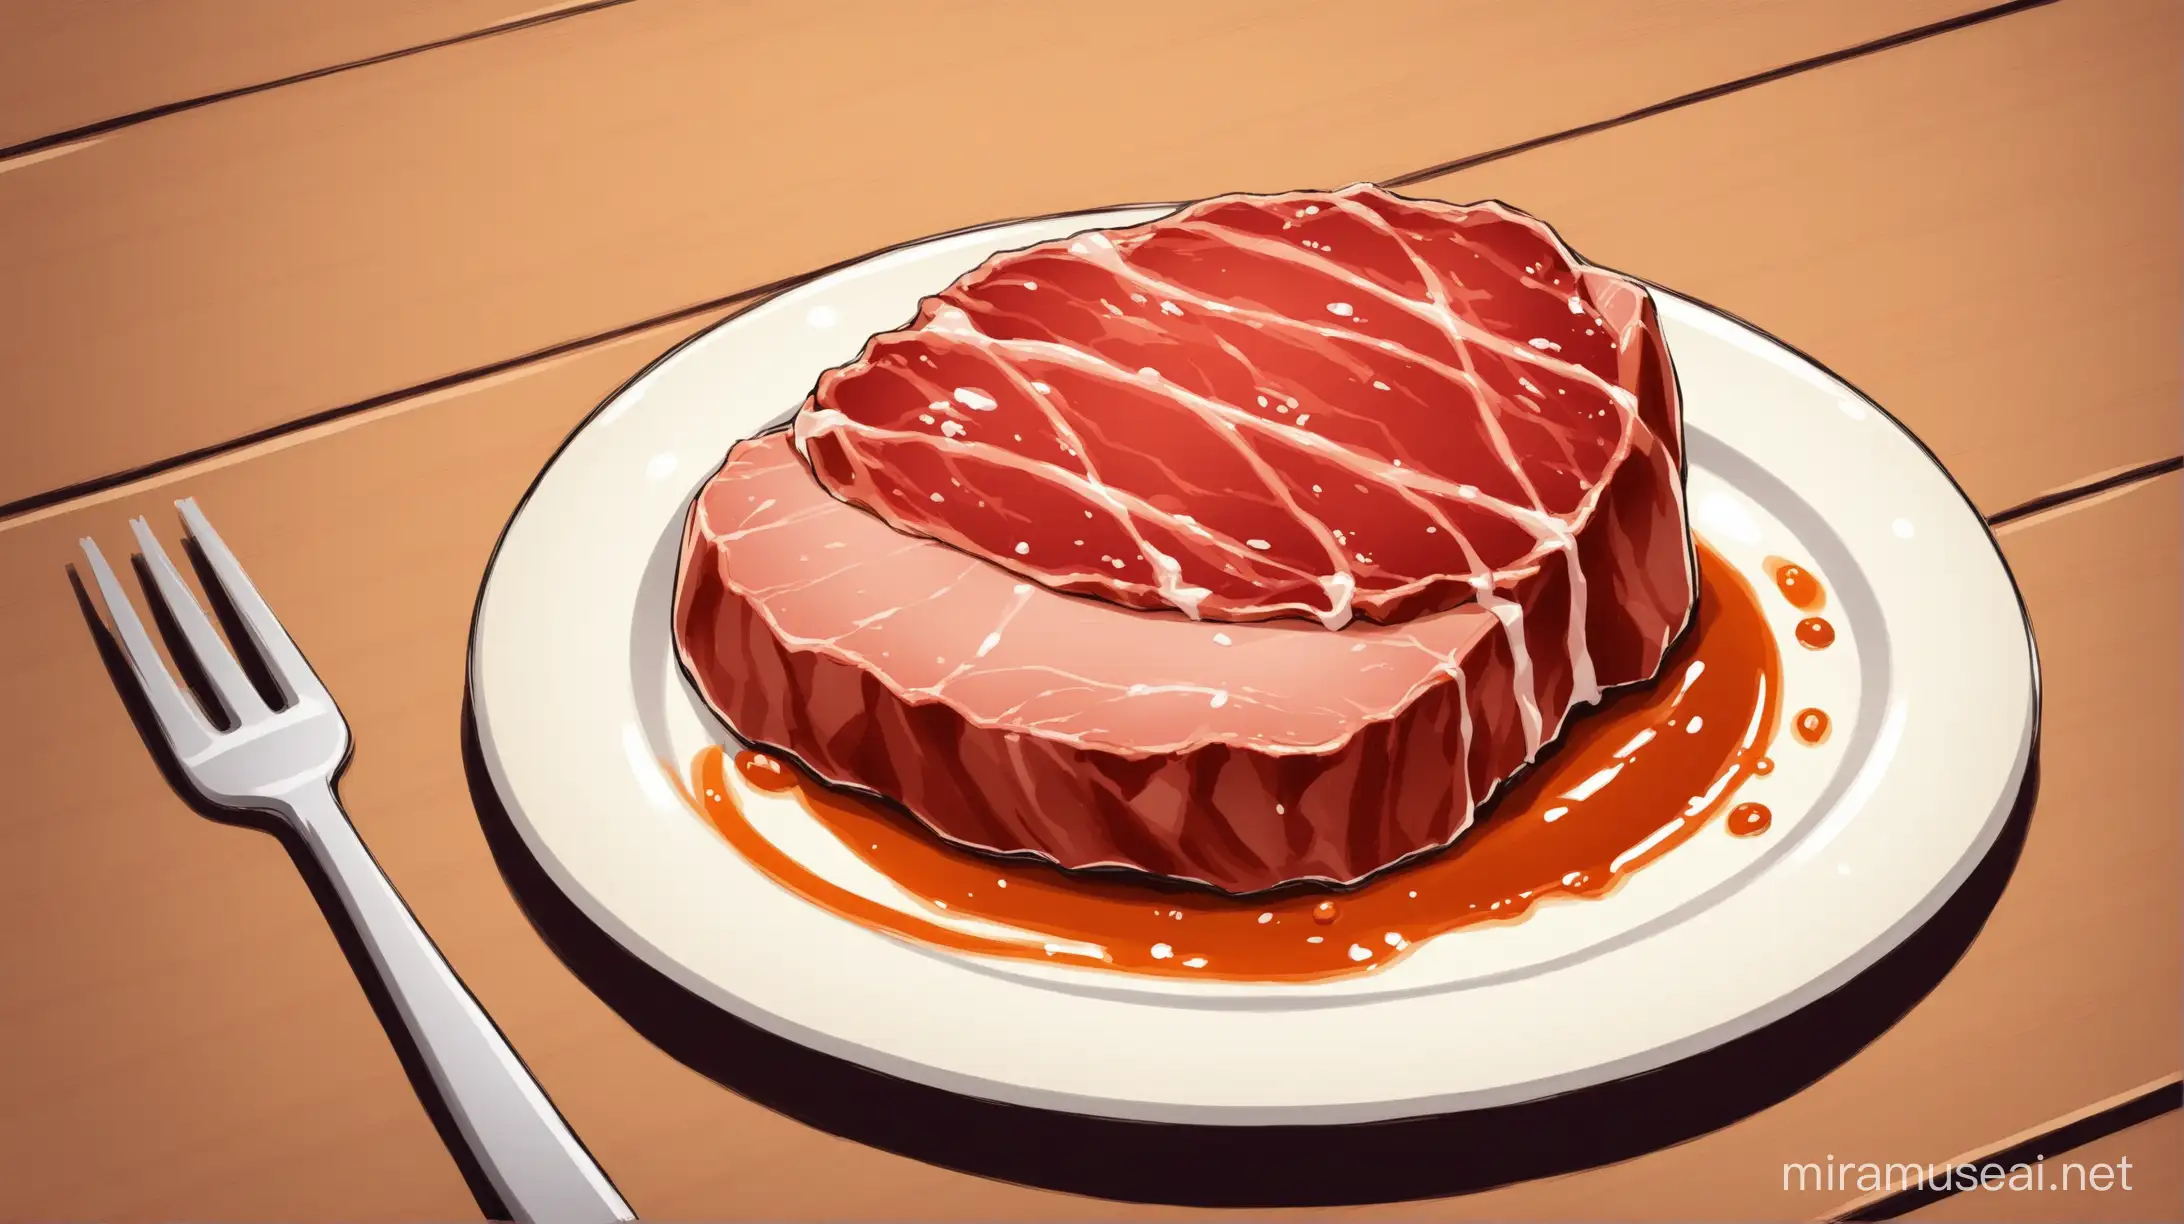 мясо лежит на тарелке